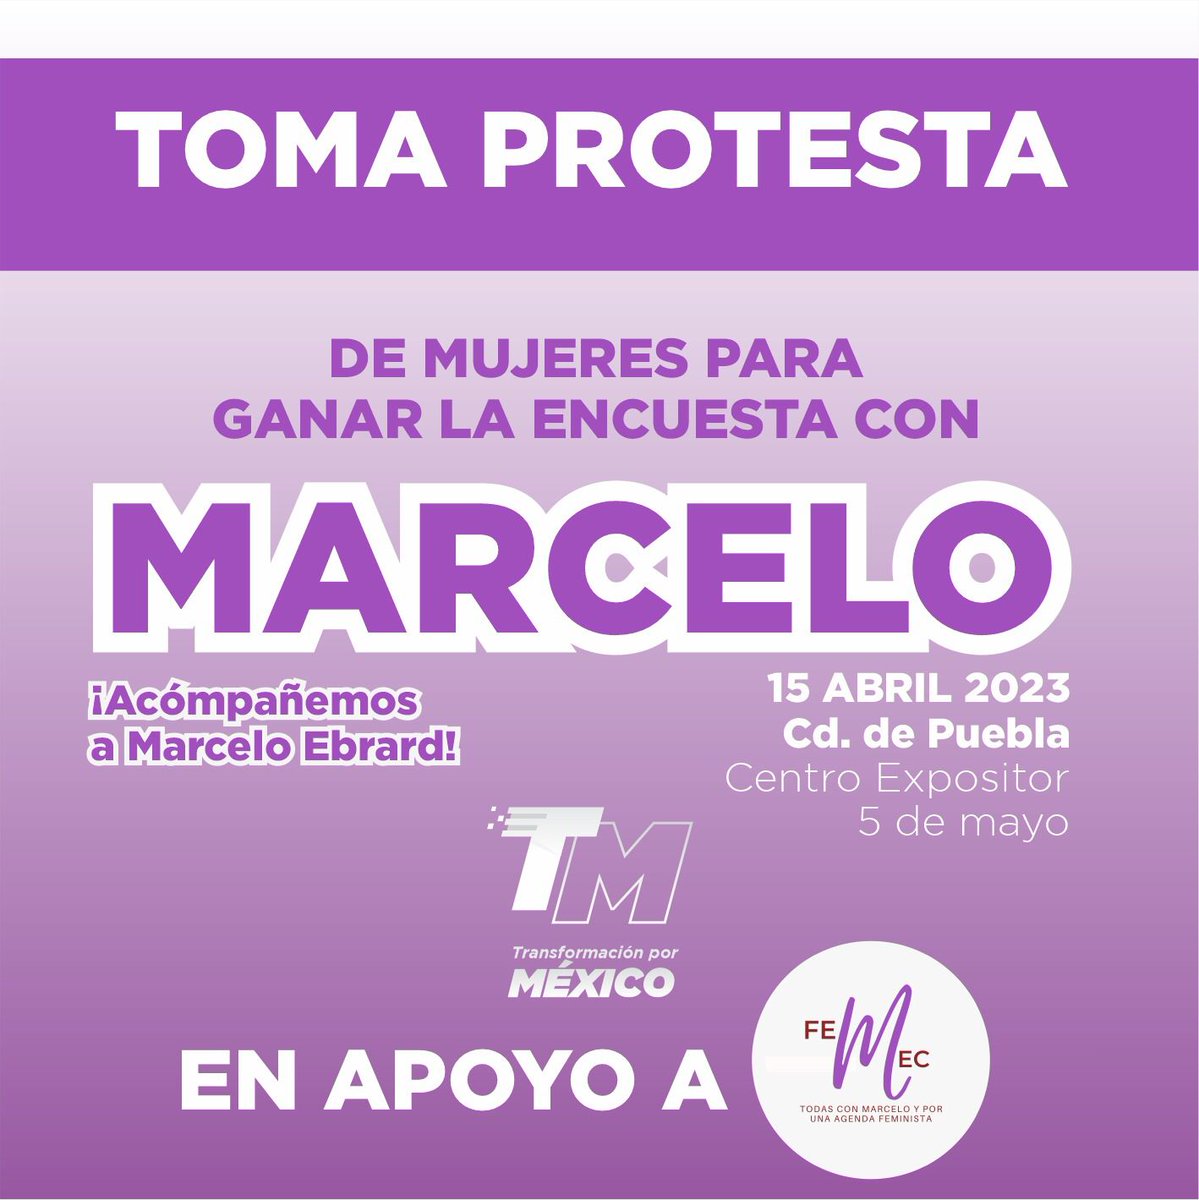 ¡Tod@s están convocad@s! Mañana @m_ebrard tomará protesta a miles de mujeres. 
📍 Centro Expositor de Puebla 
🕑 12:00 P.M.
#TransformaciónPorMéxico  #Femec #ConMarceloSi #TlaxcalaConMarcelo #PueblaConMarcelo #FeministasConMarcelo #MujeresConMarcelo #TodesConMarcelo